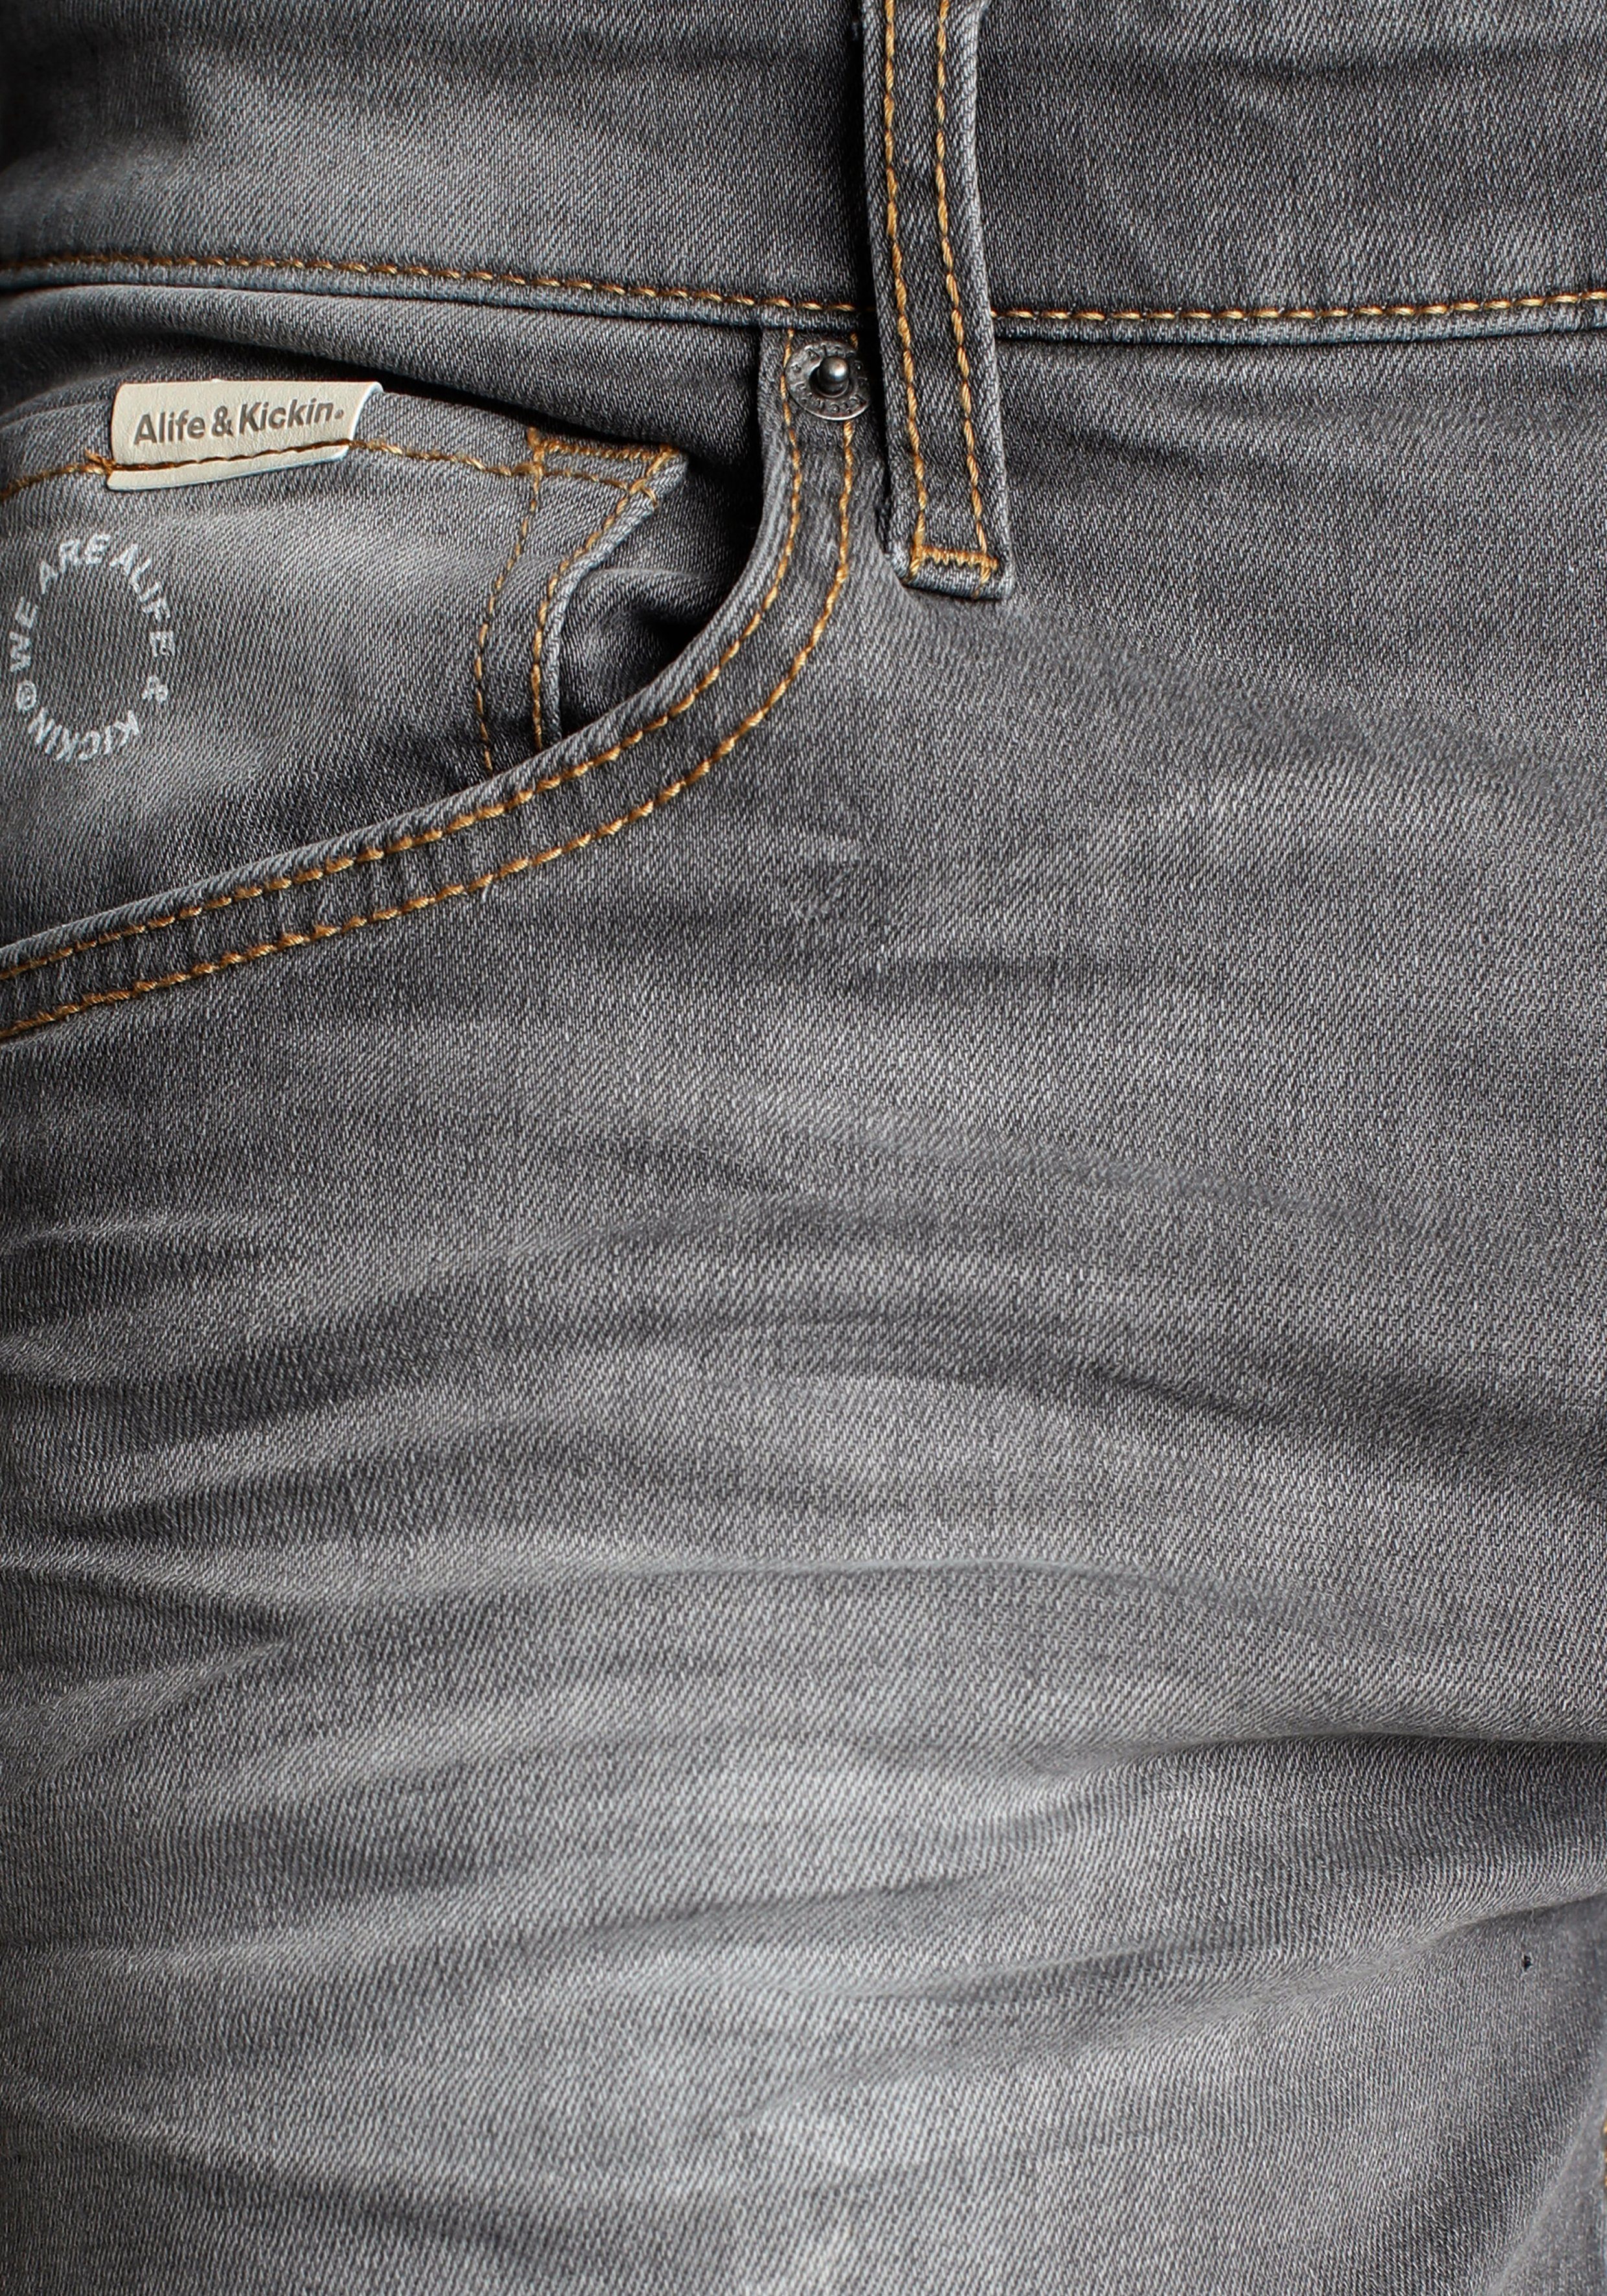 & Wash Ozon Alife wassersparende durch Produktion Ökologische, AlanAK grey dark Straight-Jeans Kickin